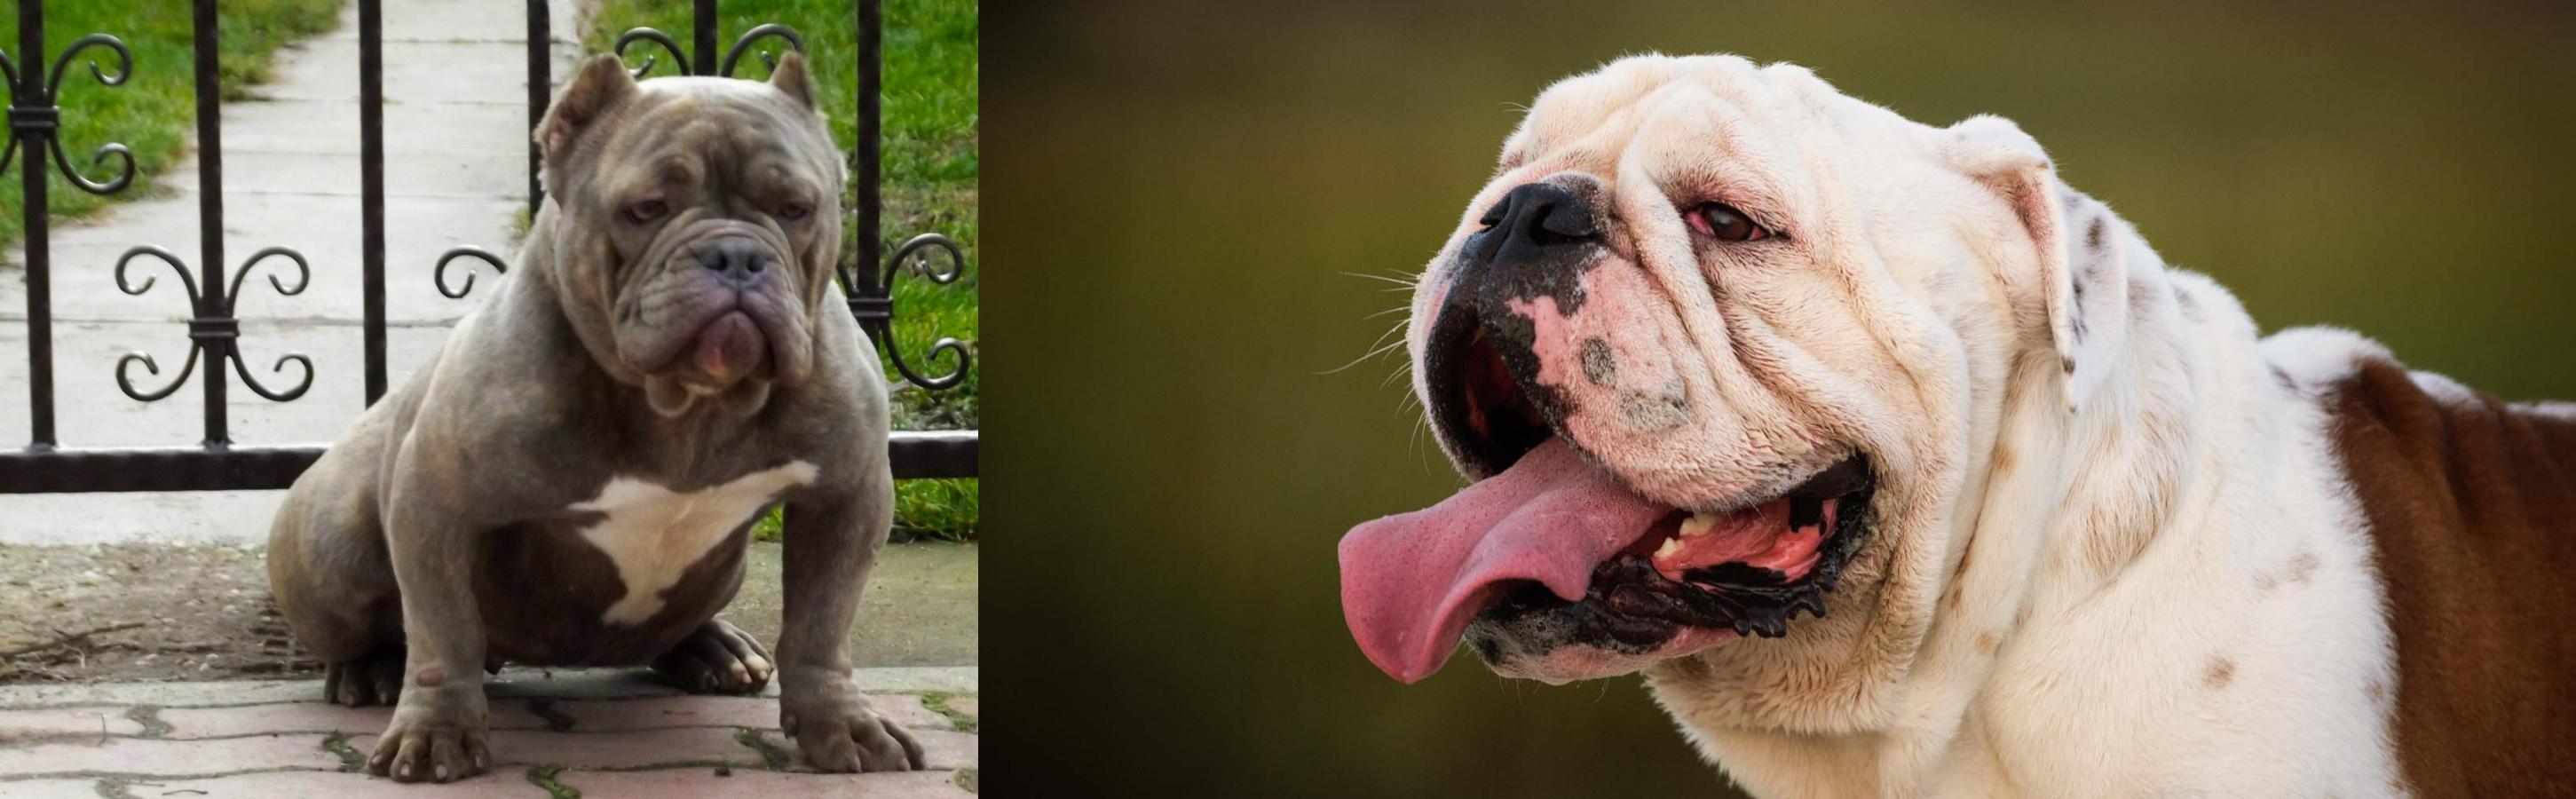 American Bully Vs English Bulldog Breed Comparison